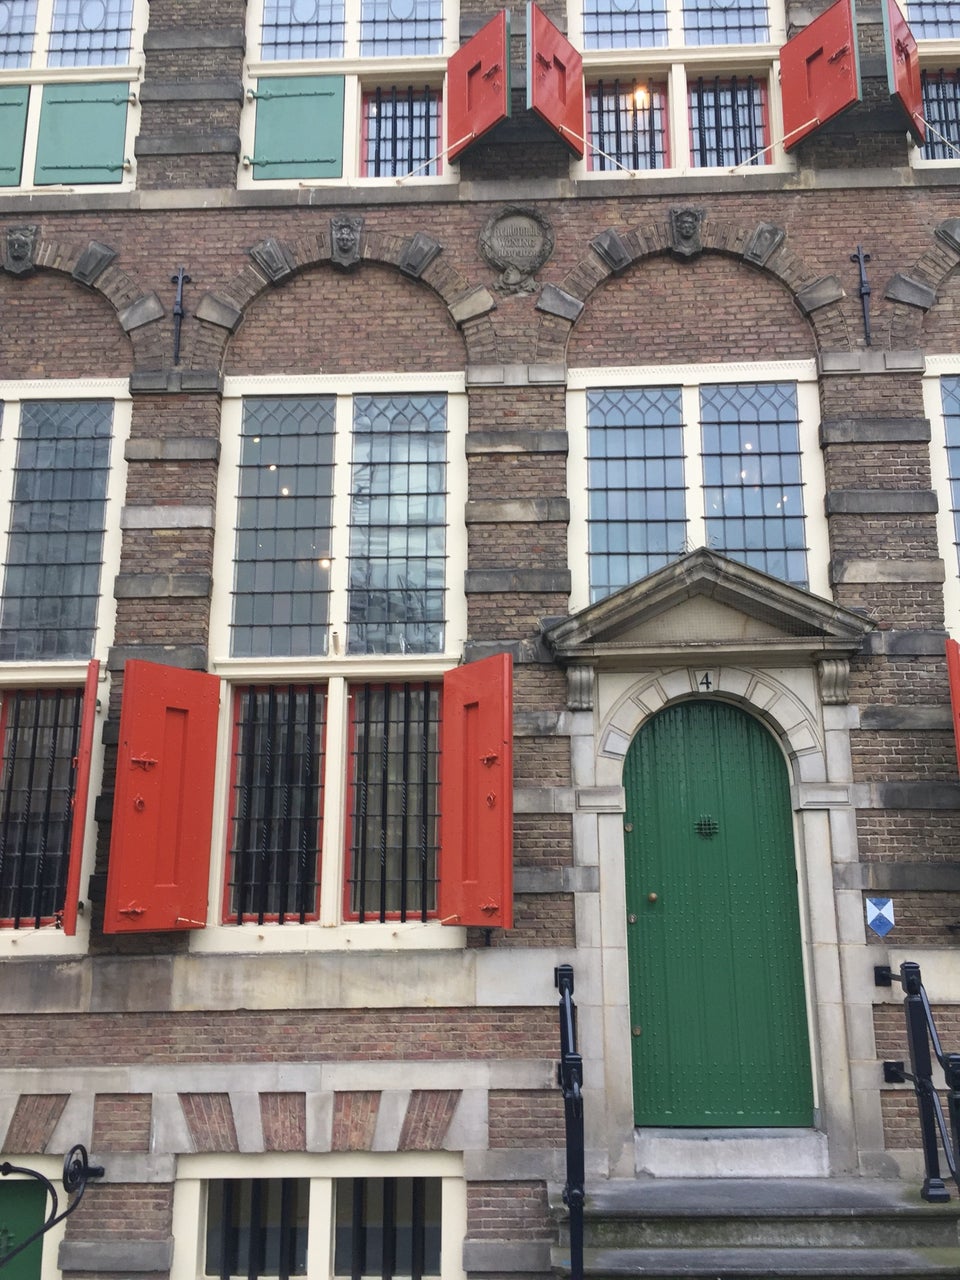 Photo of Museum Het Rembrandthuis